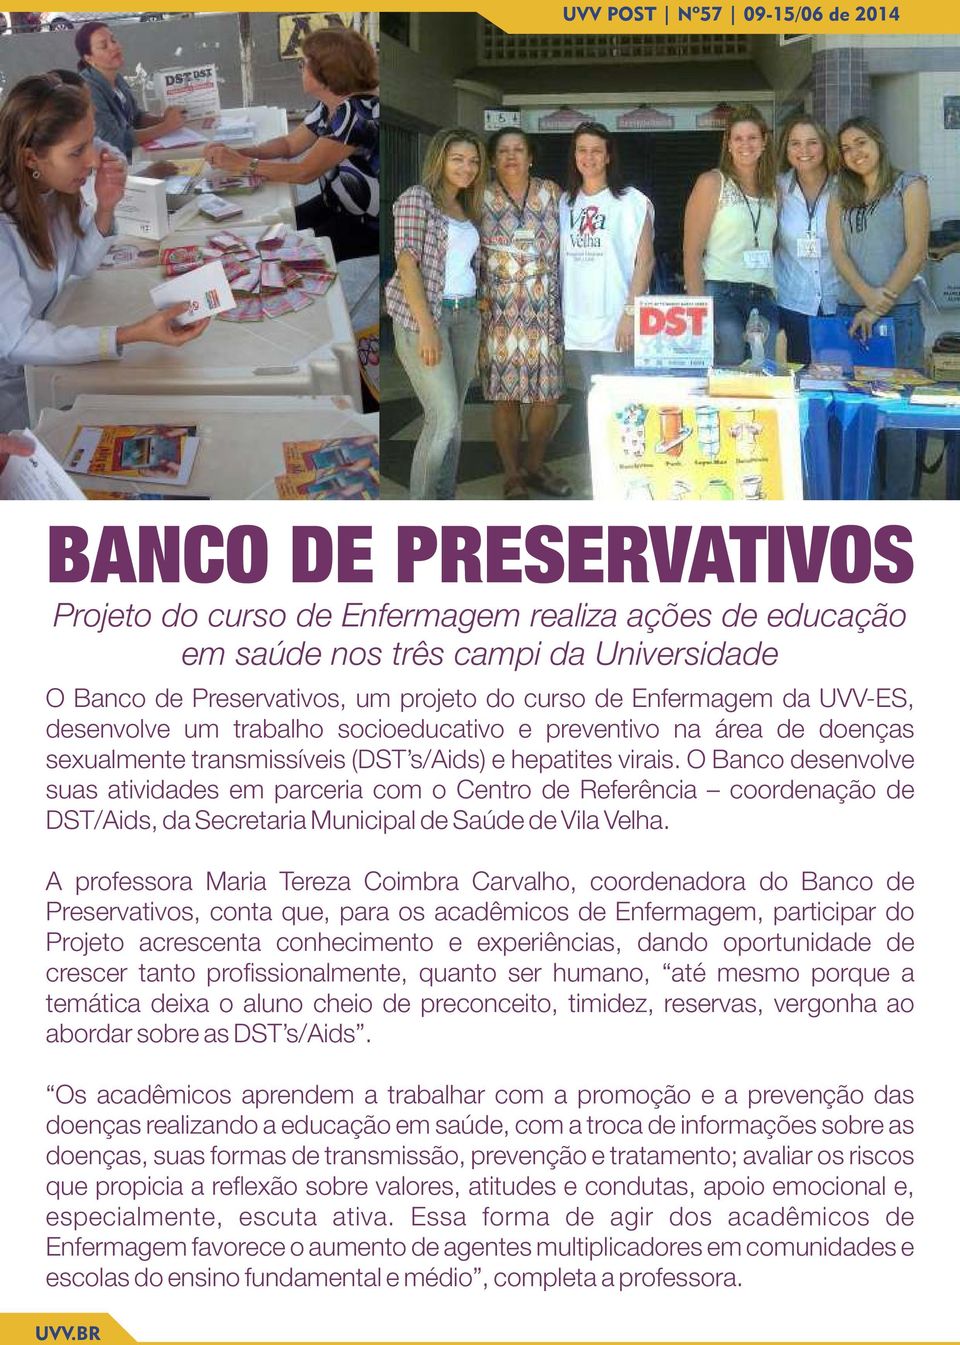 O Banco desenvolve suas atividades em parceria com o Centro de Referência coordenação de DST/Aids, da Secretaria Municipal de Saúde de Vila Velha.